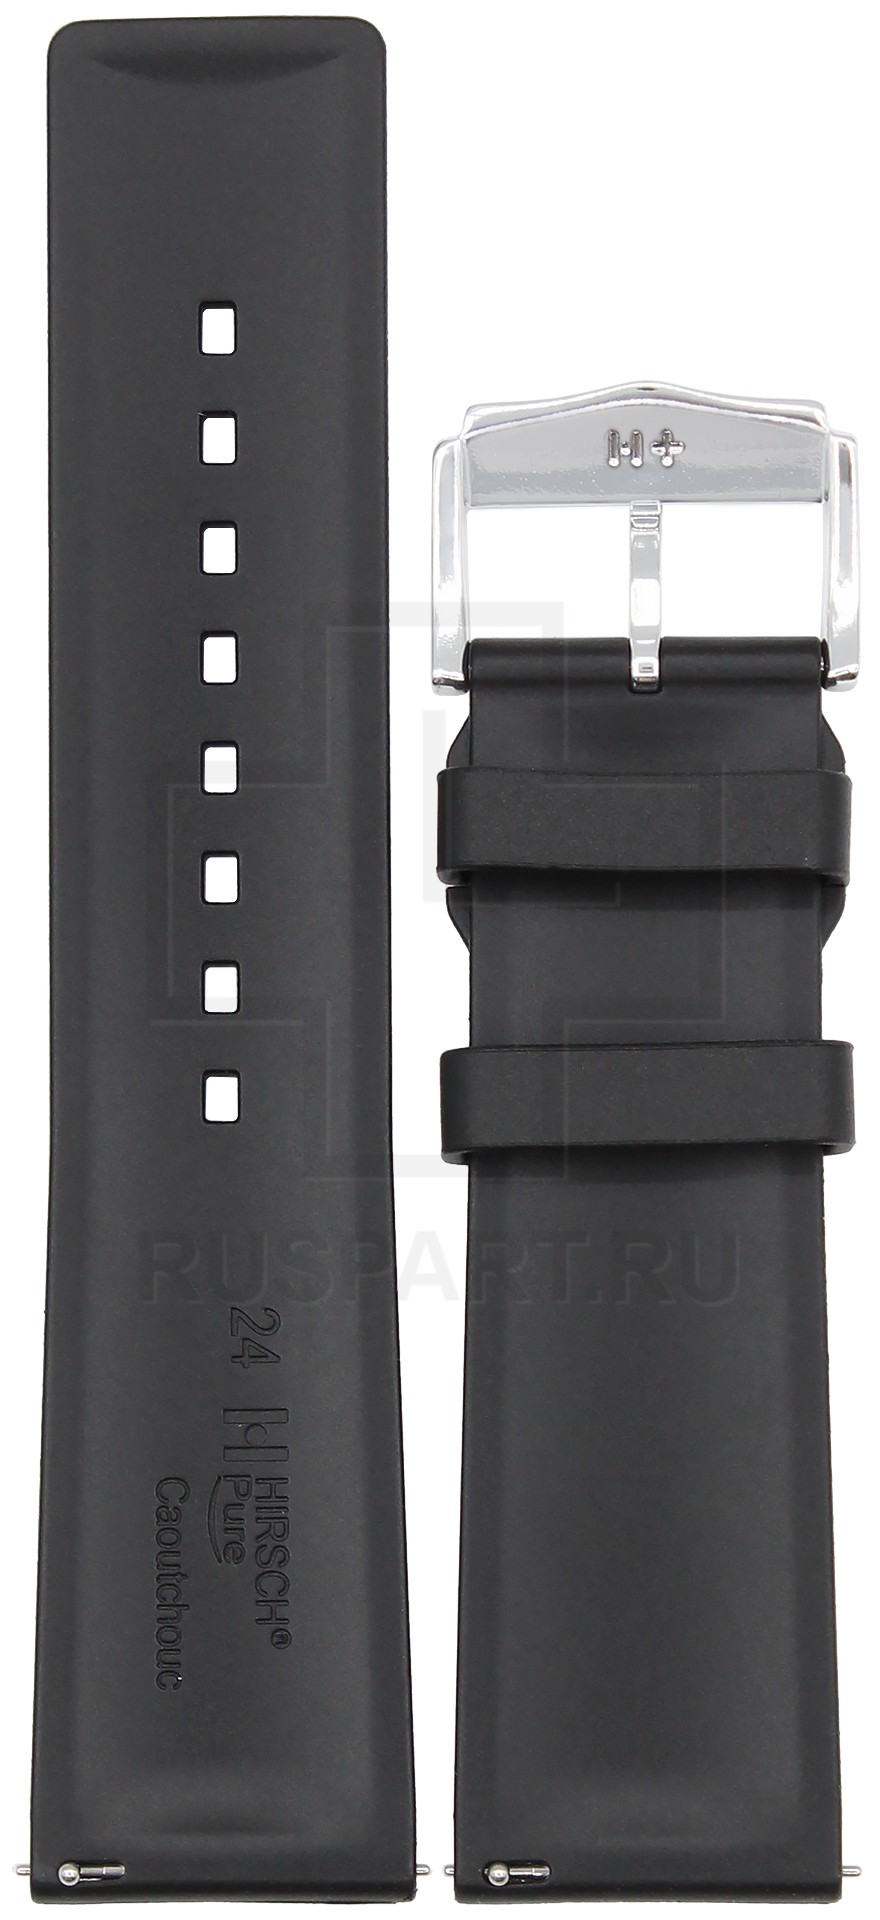 Ремешок для часов Hirsch Pure L (цвет: Черный, материал: Каучук, ширина ремешка: 24мм, ширина у застежки: 22мм, длина: L) - купить в интернет-магазине Watchband.ru.